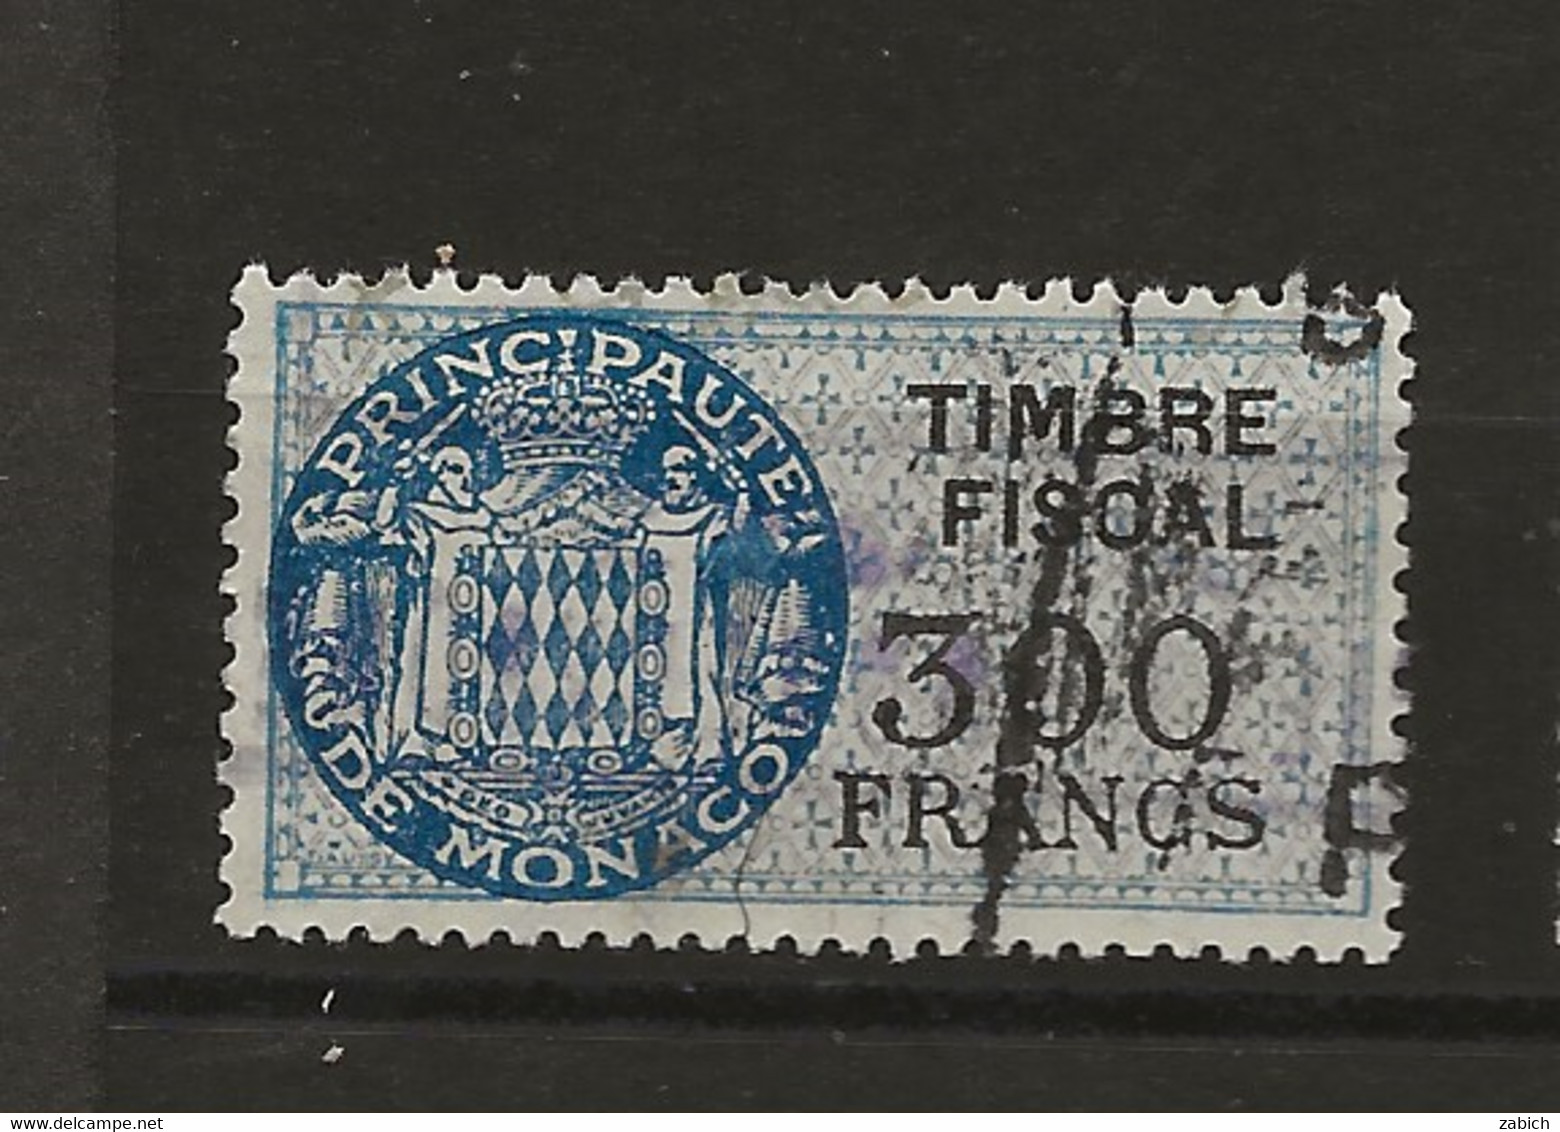 TIMBRES FISCAUX DE MONACO SERIE UNIFIEE  De 1949   N°17  300 Francs Bleu Oblitéré Cote 60 € - Fiscale Zegels